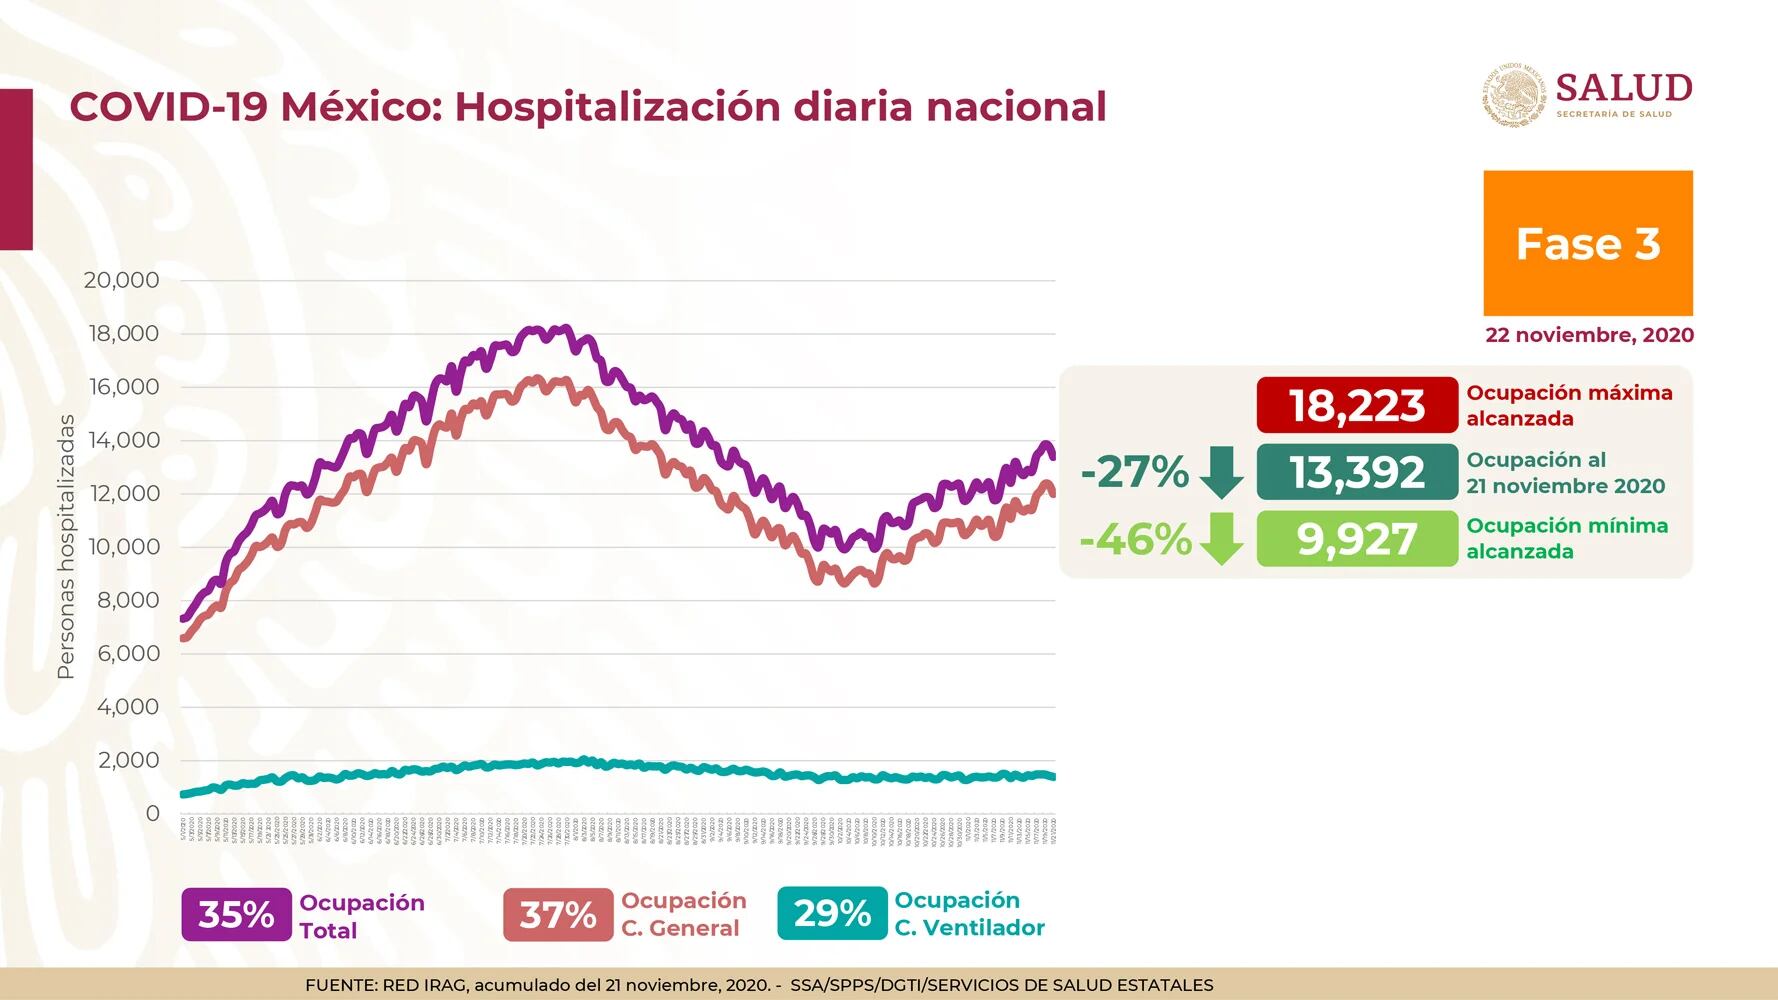 La Secretaría de Salud reportó que hay 35% de ocupación total en camas para atender a pacientes con COVID-19 en México (Foto: Twitter@HLGatell)